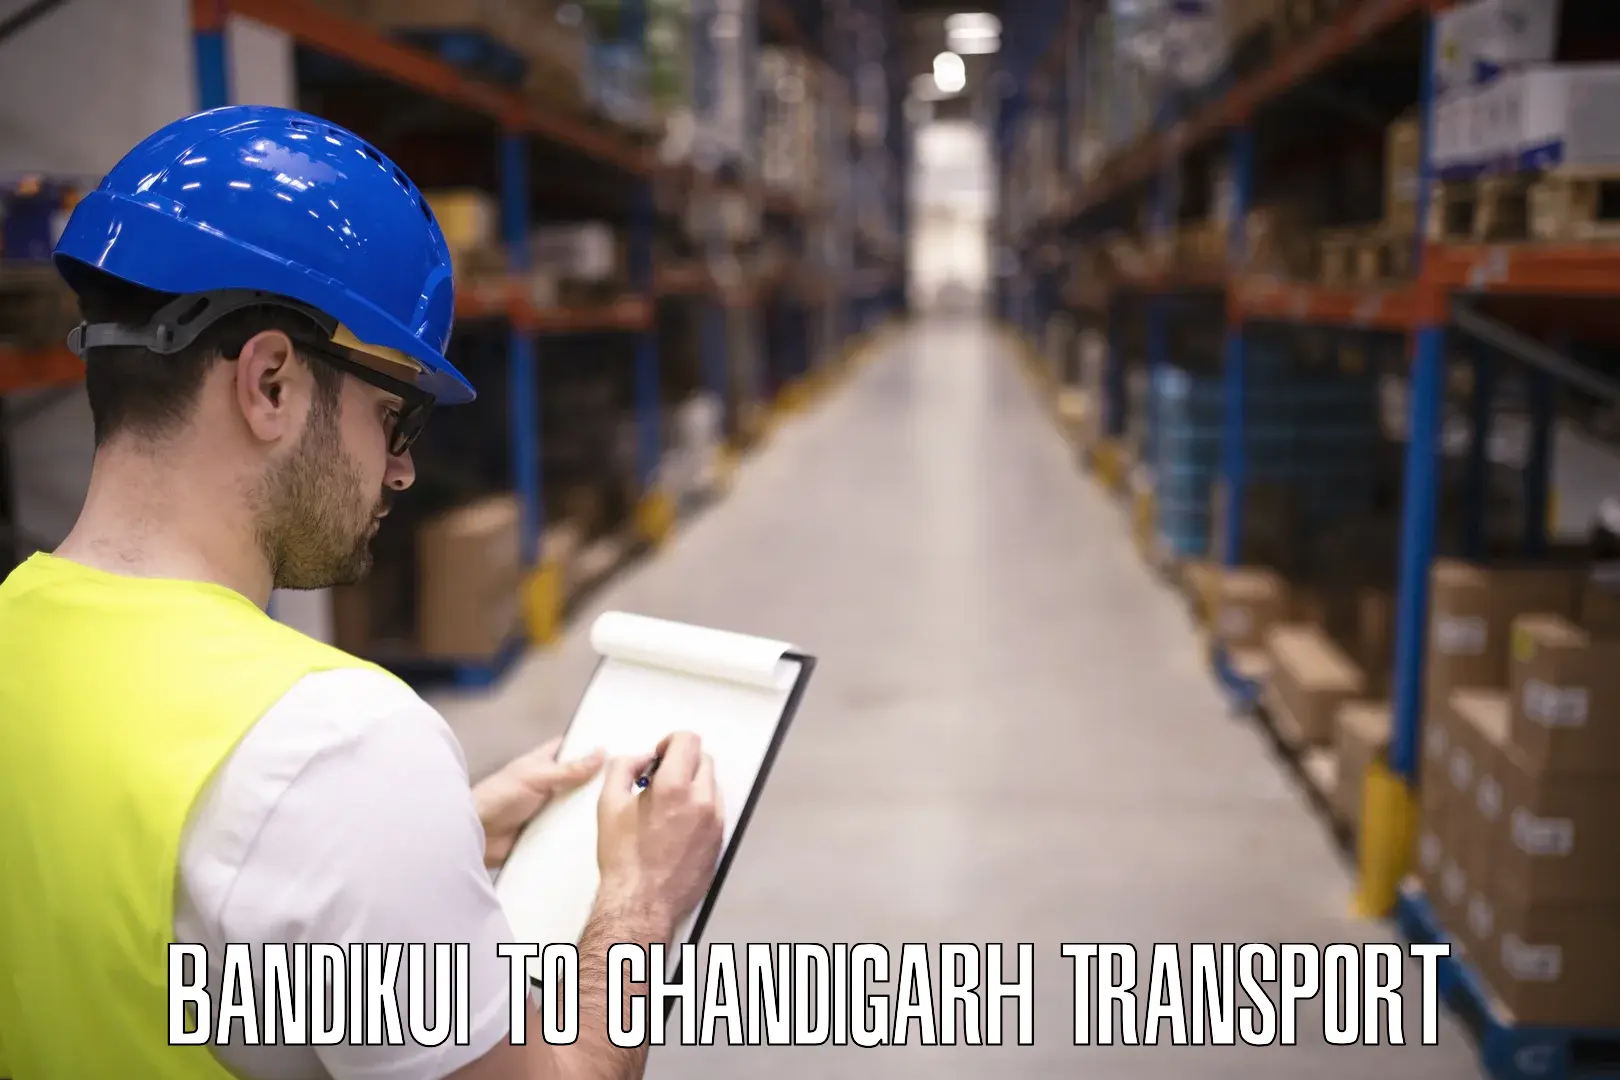 Lorry transport service Bandikui to Chandigarh